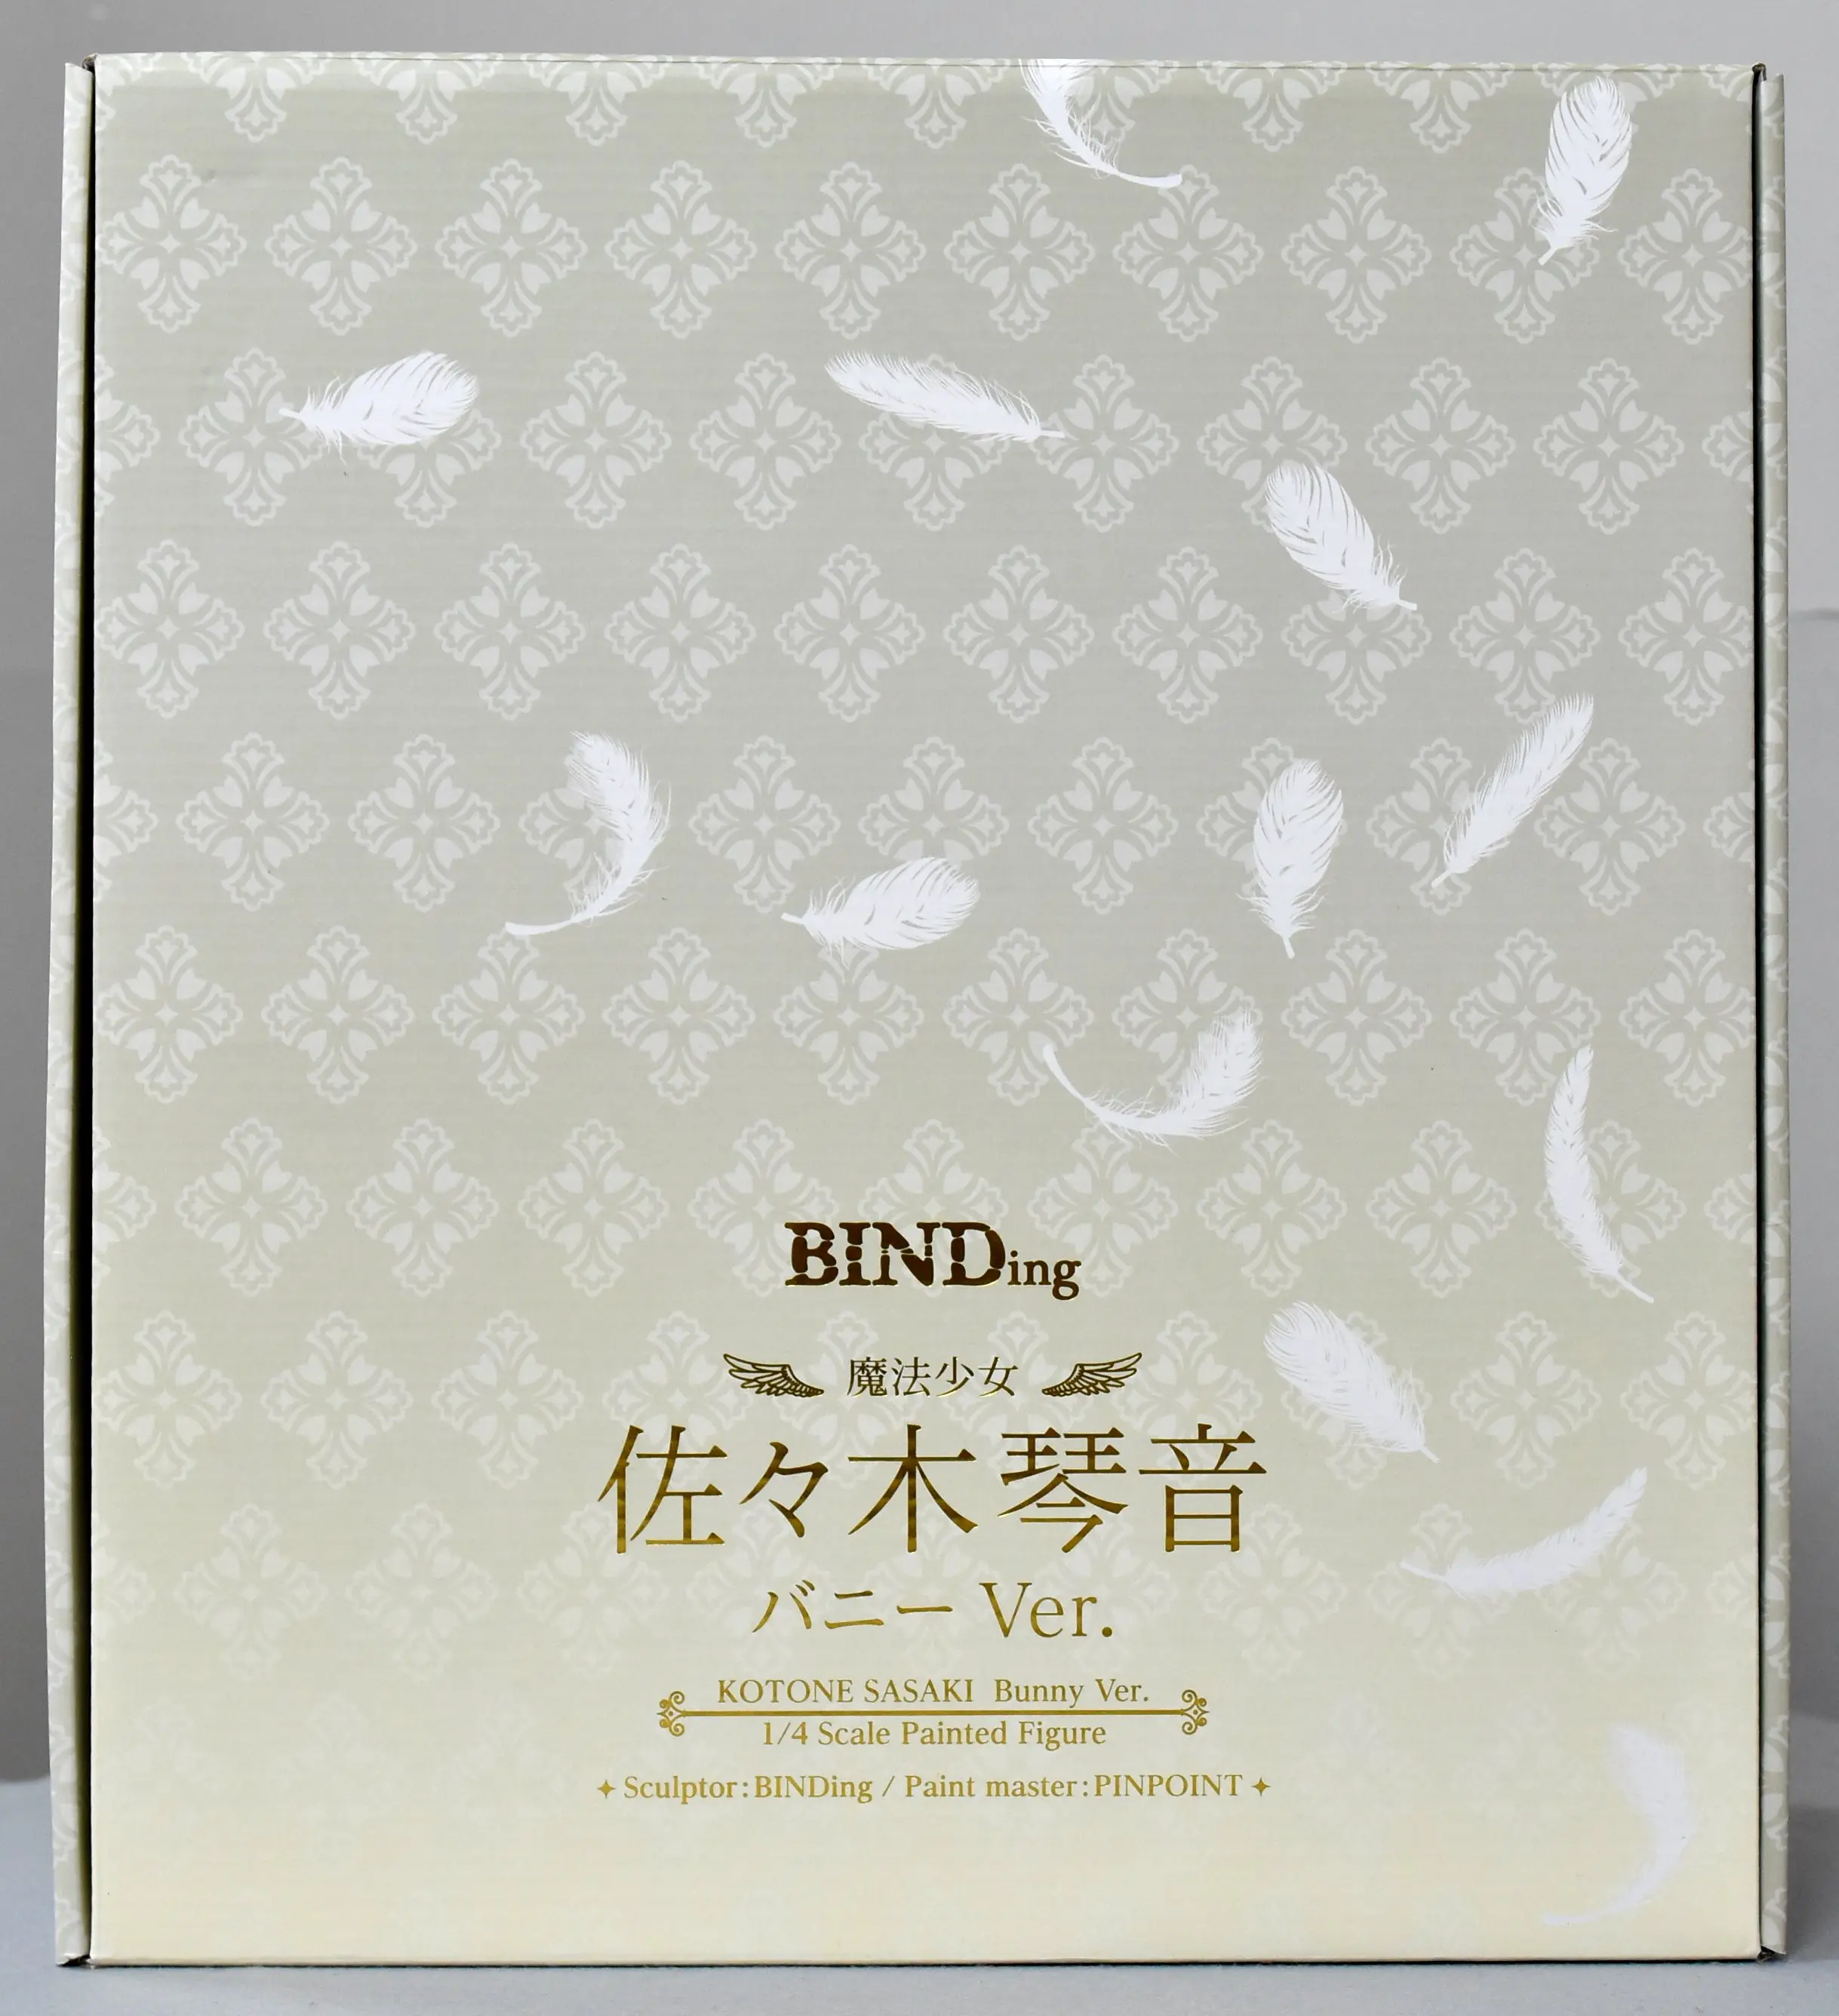 BINDing - Mahou Shoujo (Raita) / Sasaki Kotone